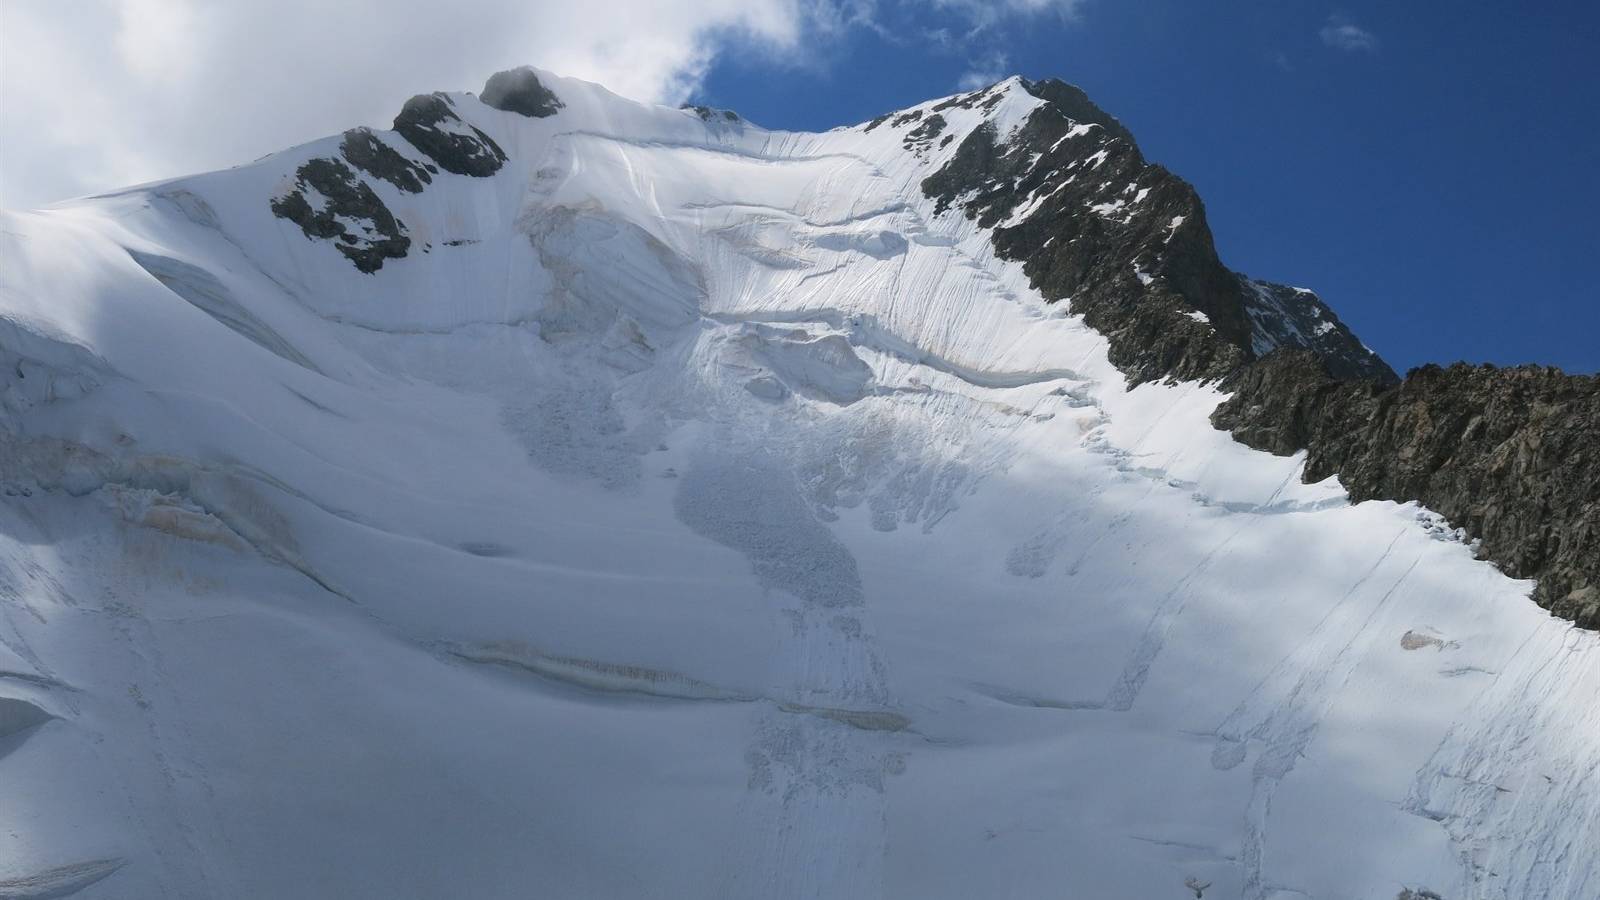 Am Sonntagnachmittag verunglückte am Piz Bernina ein Bergführer tödlich.